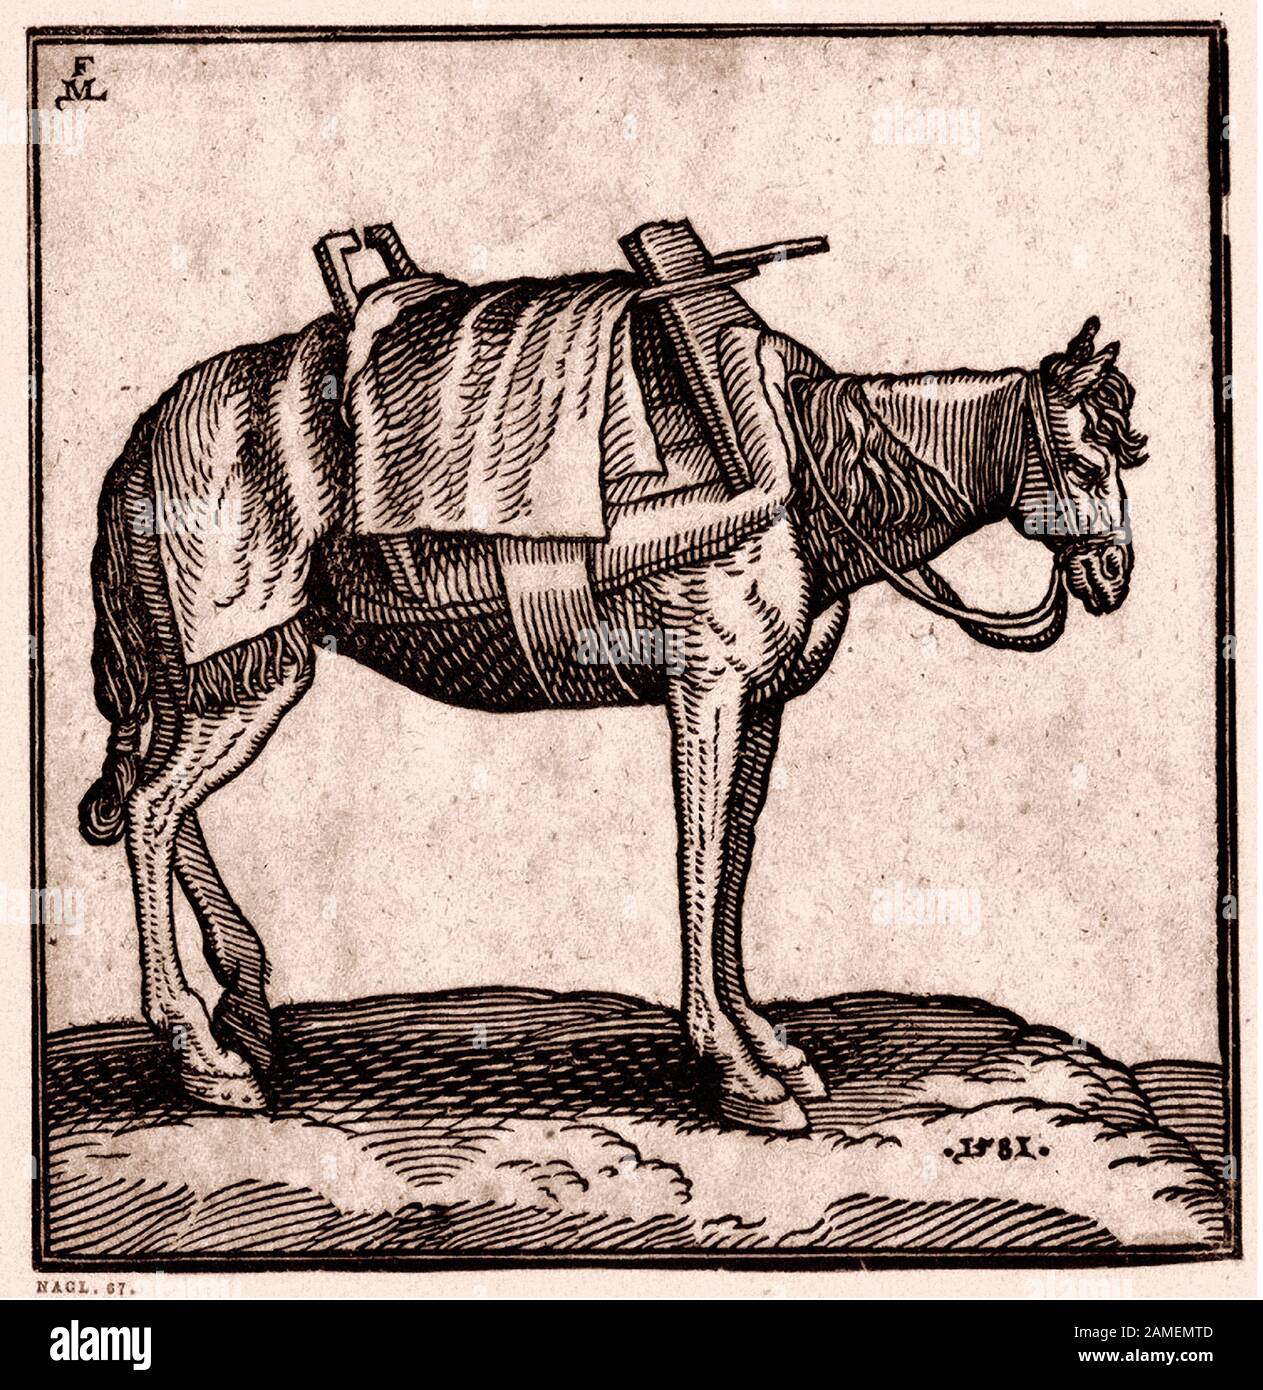 L'histoire de l'Empire ottoman. Un cheval de bagages Tartar. Par Melchior Lorck. xvie siècle Banque D'Images